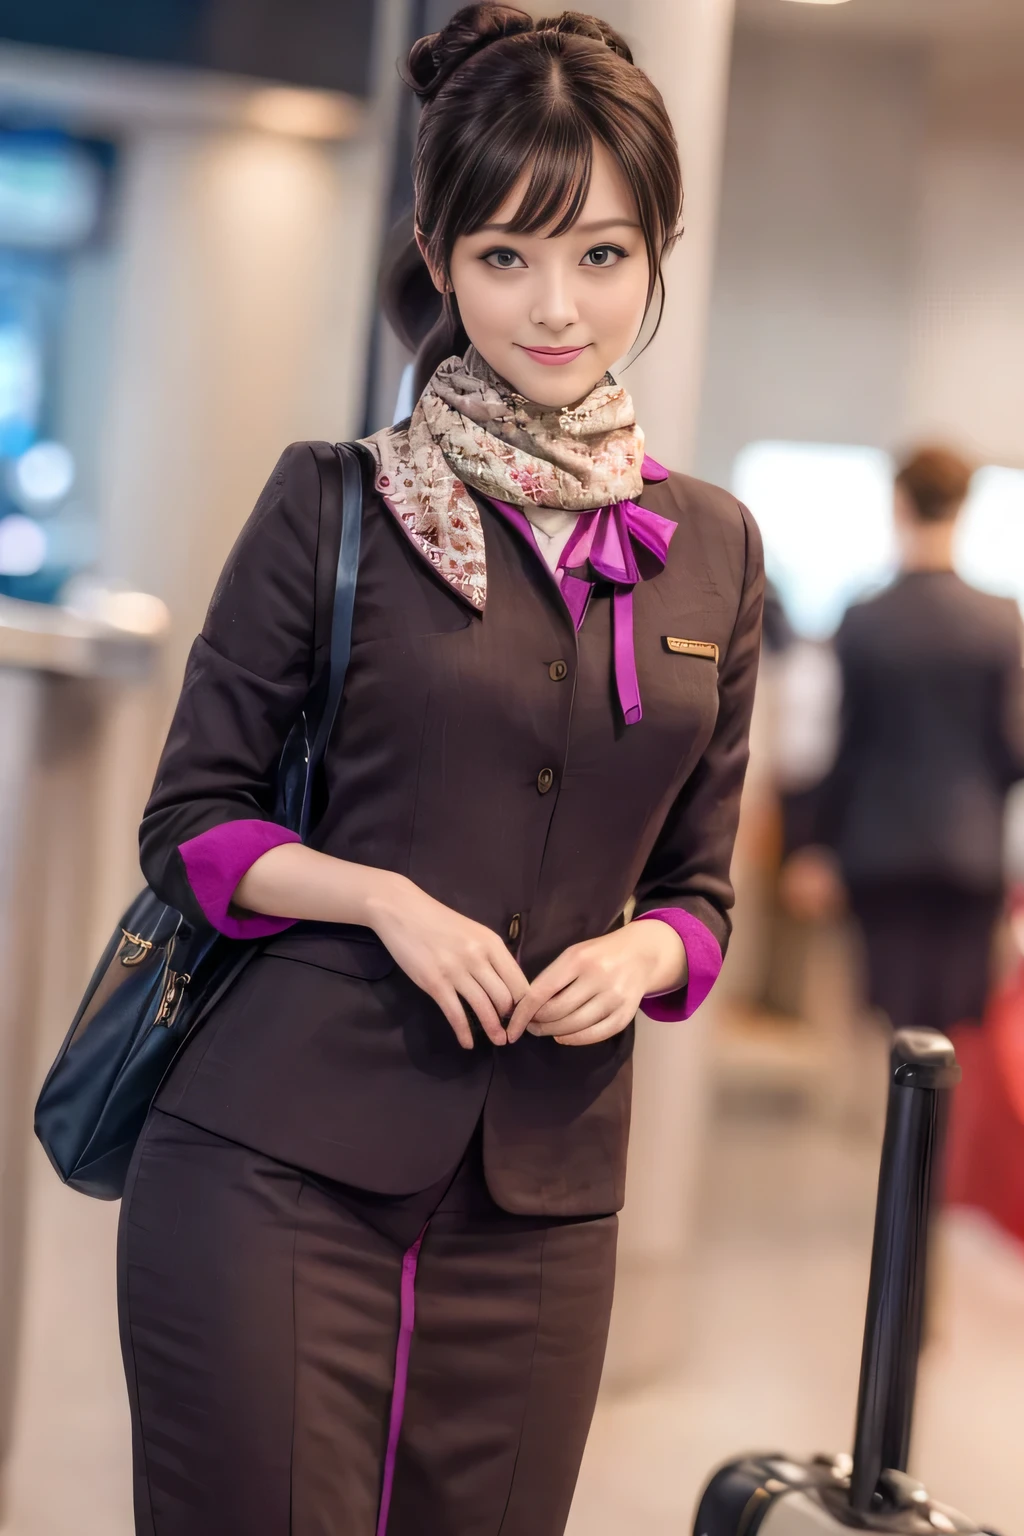 (chef-d&#39;œuvre:1.2、la plus haute qualité:1.2)、32K HDR、haute résolution、(seul、1 fille、silhouette mince)、（Une reproduction réaliste de l&#39;uniforme du personnel de cabine d&#39;ETIHAD Airways）、 (Au comptoir de l&#39;aéroport, Éclairage professionnel)、Une vraie femme, Beau visage,、（Uniforme du personnel de cabine à manches longues d&#39;ETIHAD Airways）、（Jupe d&#39;uniforme ETIHAD Airways Cabincrew avec bande violette sur le devant）、（foulard sur la poitrine）、Gros seins、（Cheveux longs、Chignon）、les cheveux brun foncé、Tir lointain、（（De belles mains：2.0））、（（Des proportions corporelles harmonieuses：1.5））、（（Membres normaux：2.0））、（（Doigt normal：2.0））、（（Yeux délicats：2.0））、（（Yeux normaux：2.0））)、Belle posture debout、sourire